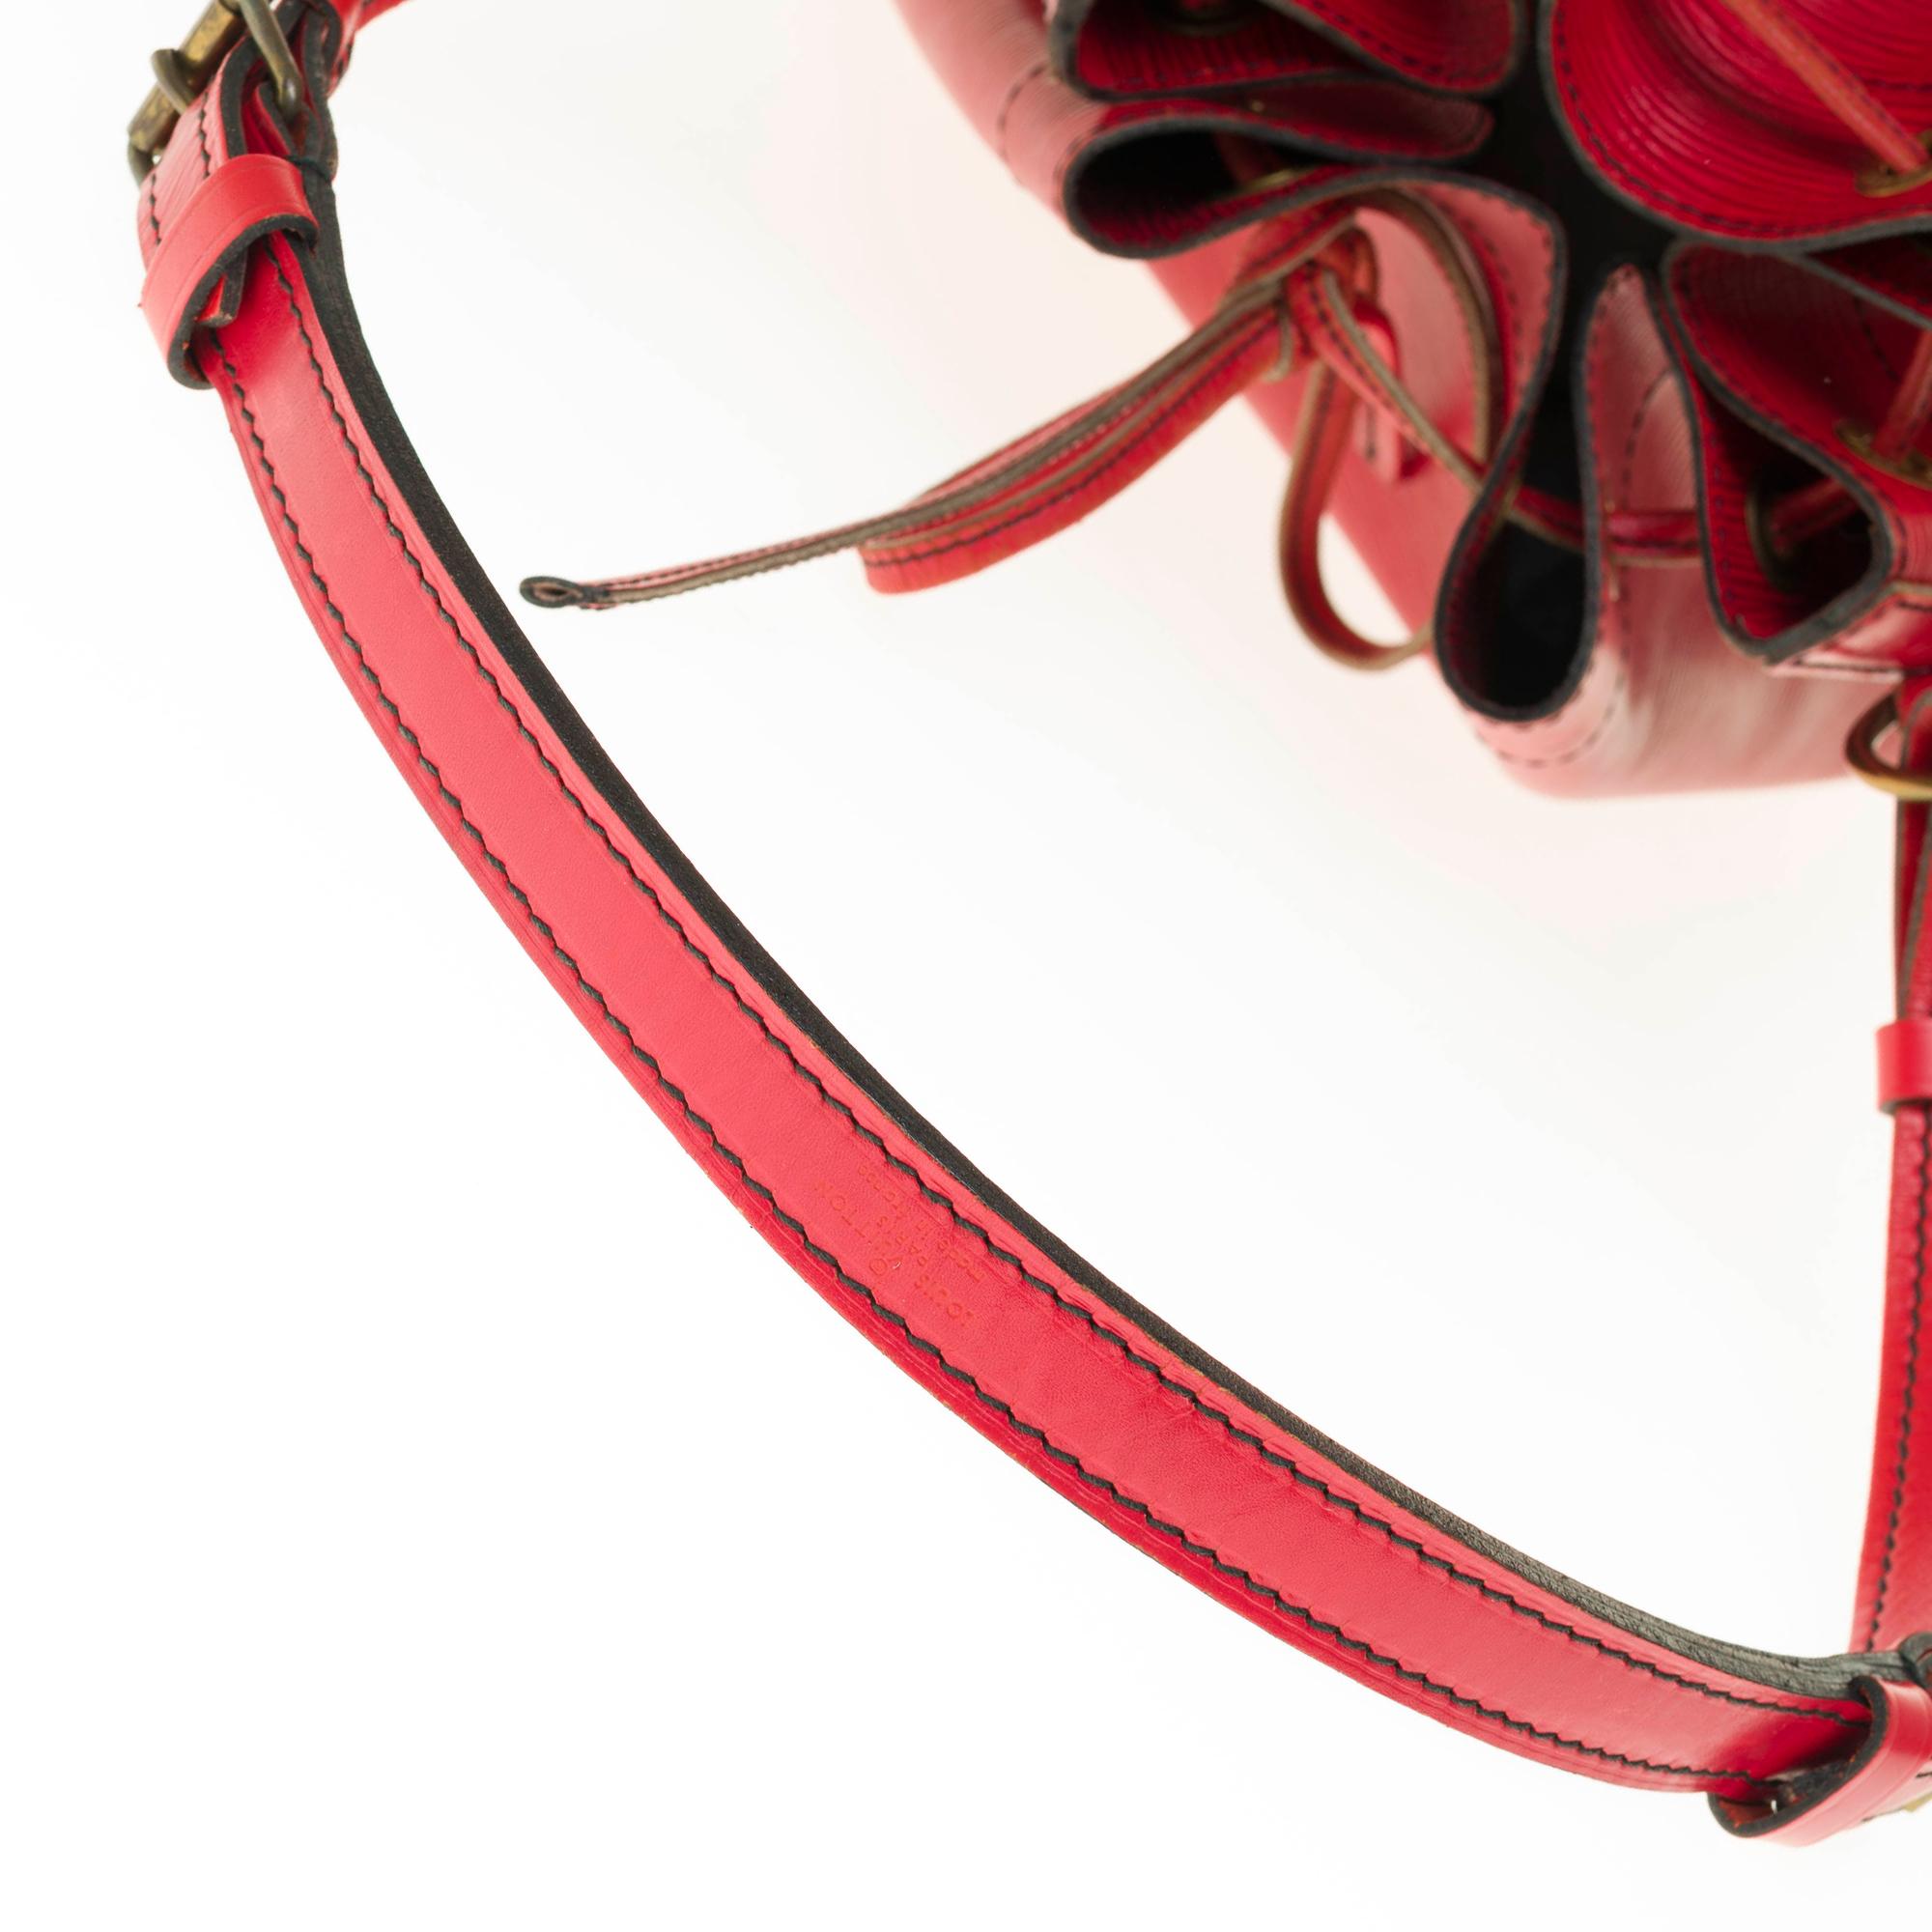 Louis Vuitton Noé Grand modele shoulder bag in red epi leather, gold hardware 3